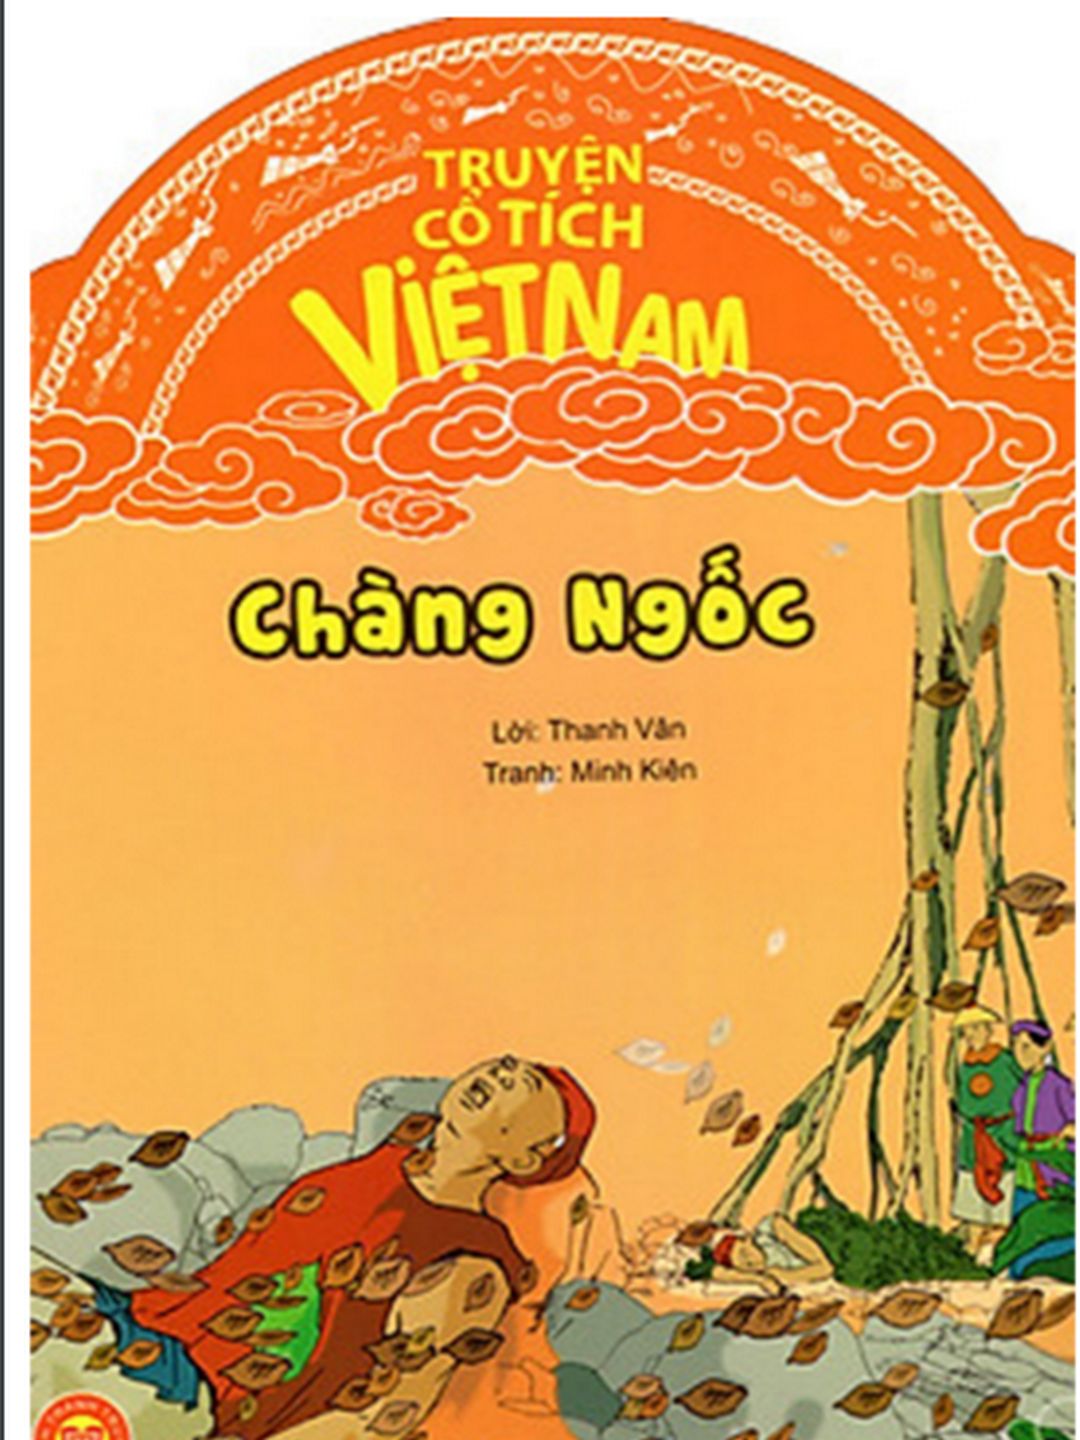 Truyện Cổ Tích Việt Nam – Chàng Ngốc